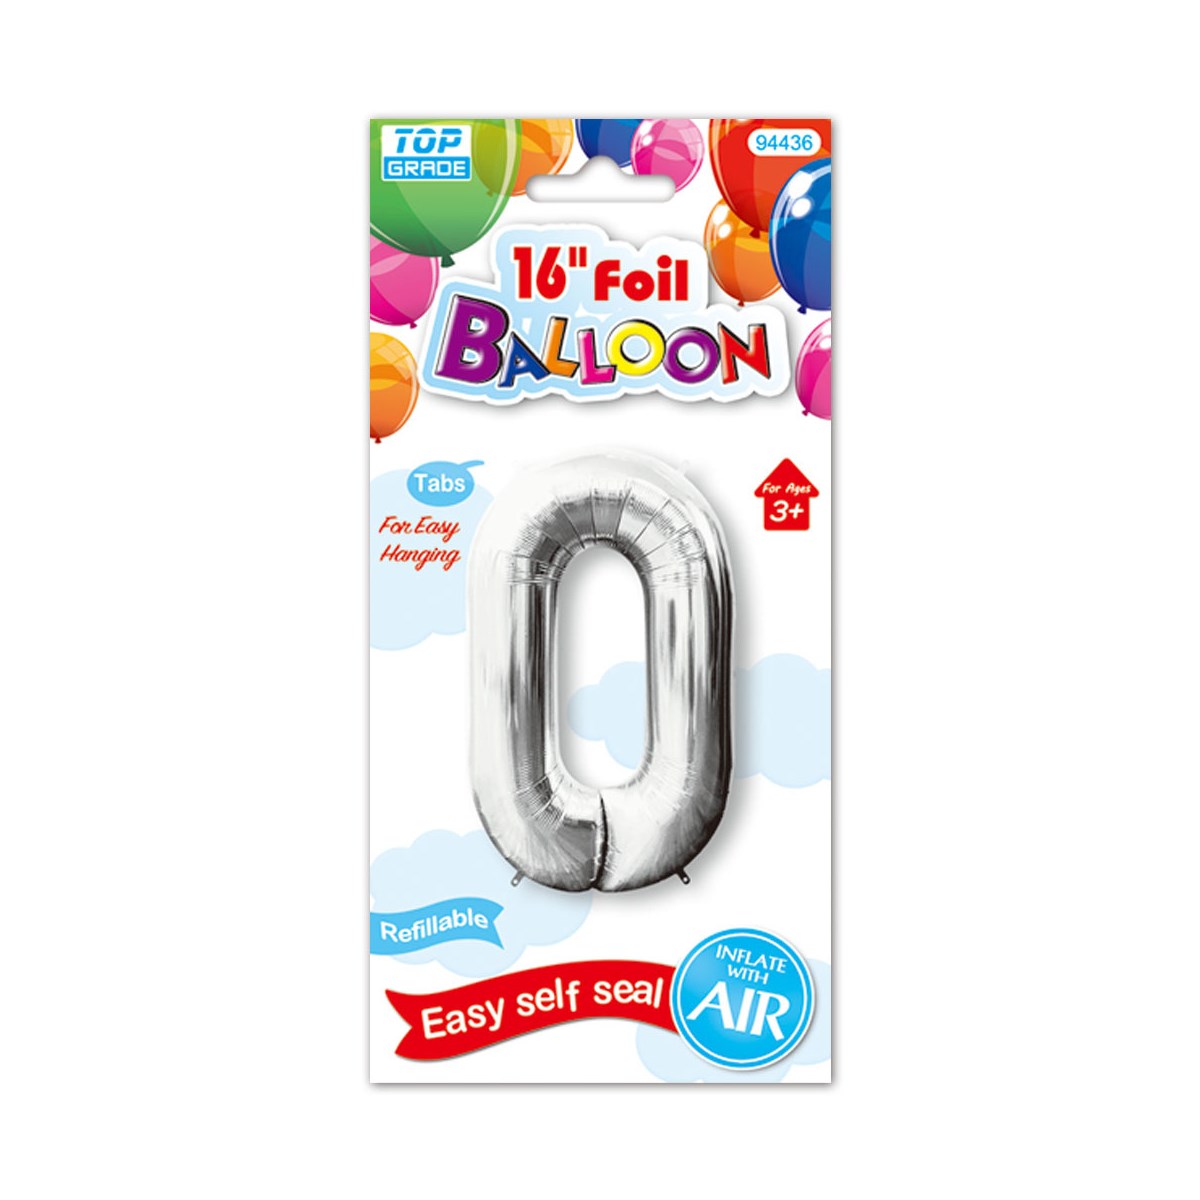 16"foil balloon silv #0 12/600